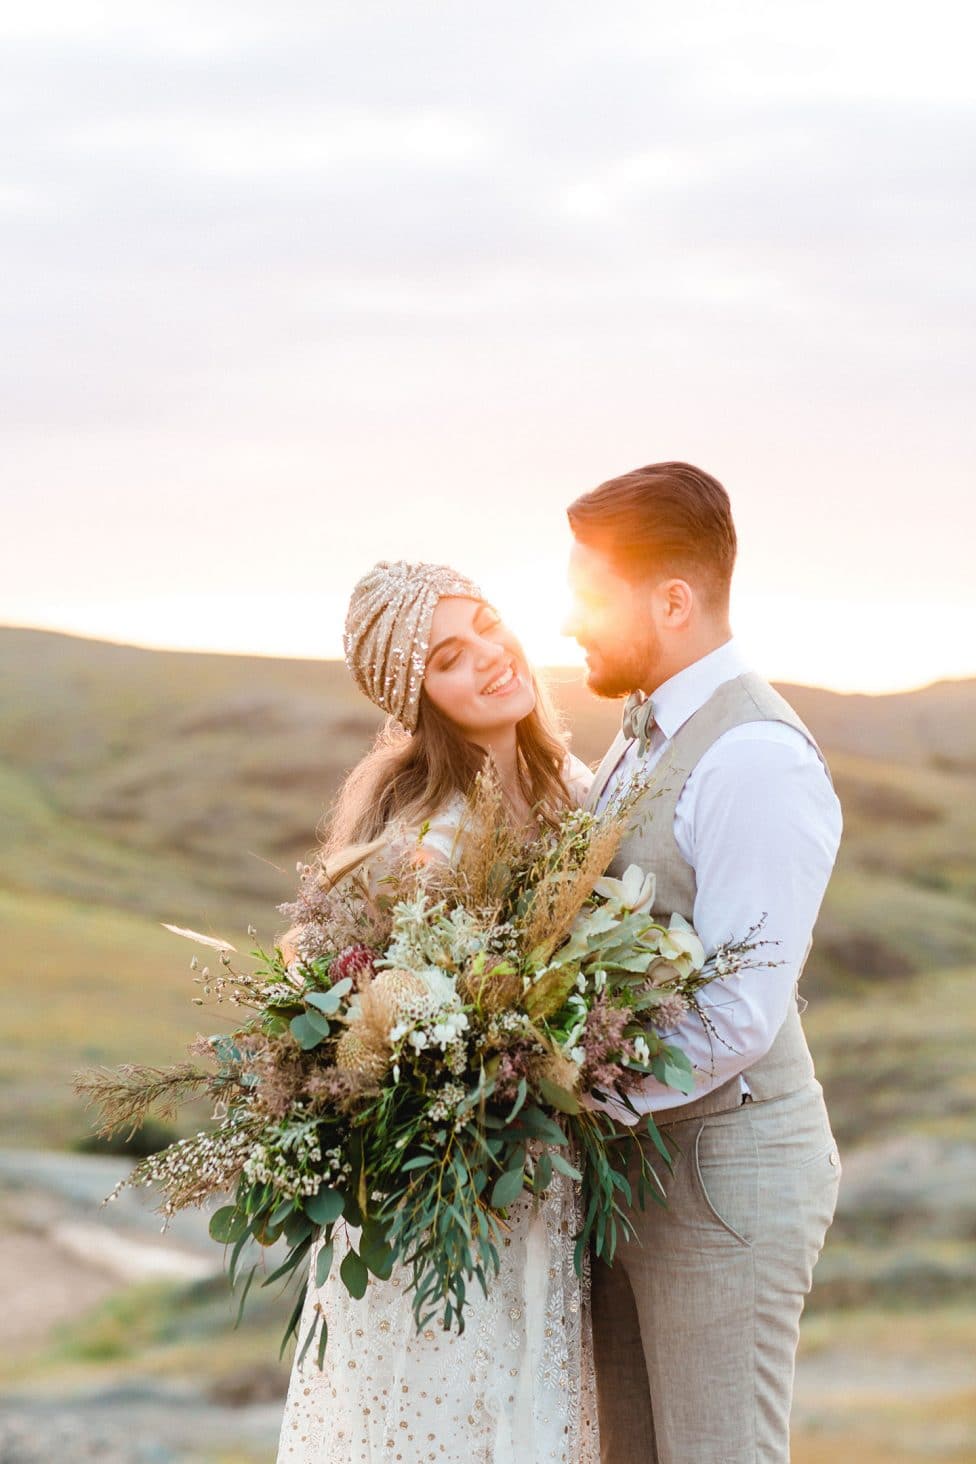 Hochzeitswahn - Ein strahlendes Paar in Hochzeitskleidung teilt einen zärtlichen Moment inmitten eines goldenen Sonnenuntergangs auf einem ruhigen Hügel, während die Braut einen großen, naturalistischen Blumenstrauß hält.